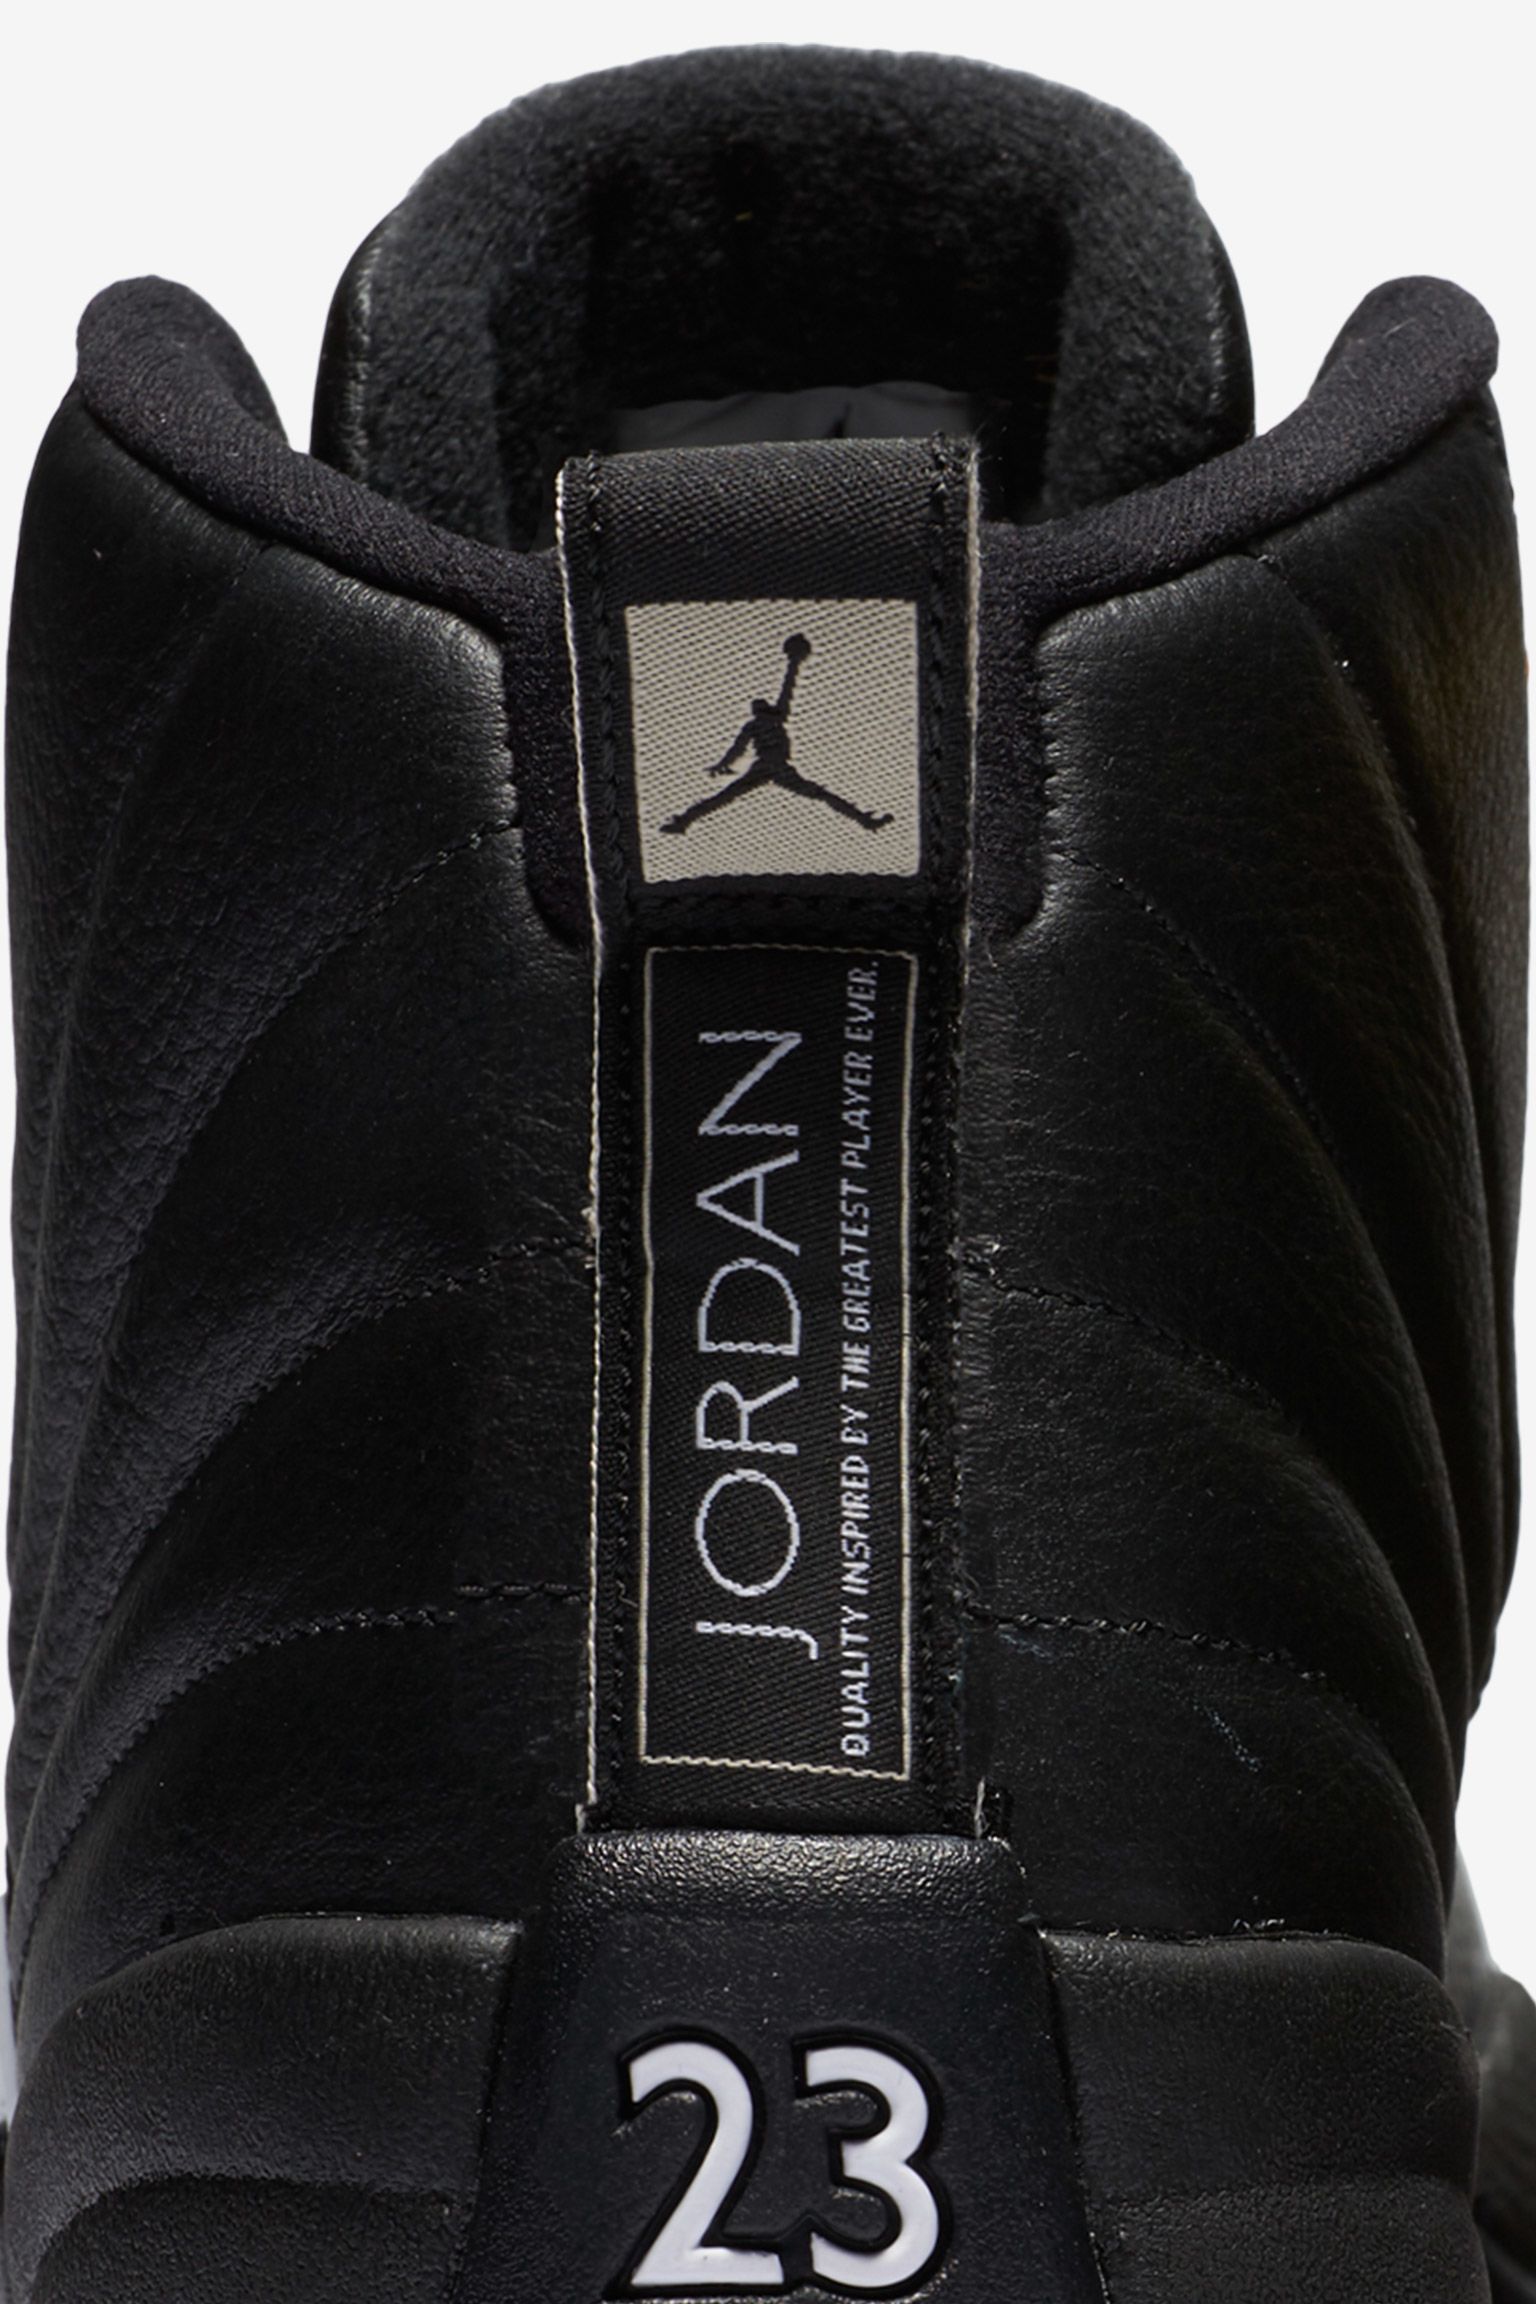 Air Jordan 12 'The Master' Date. Nike SNKRS